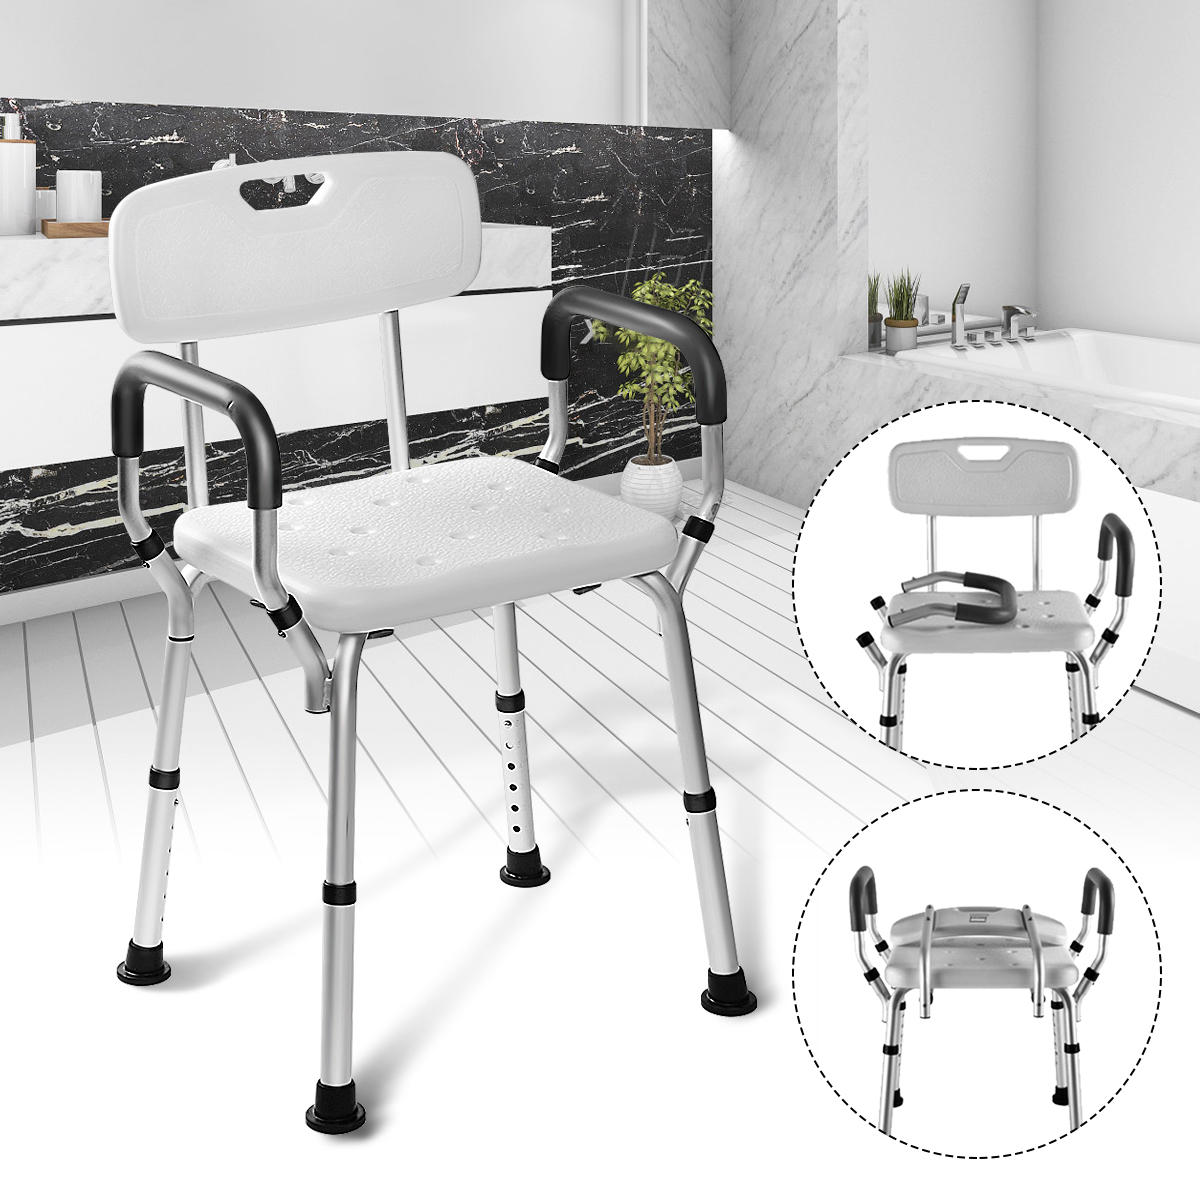 Adjustable Medical Shower Folding Chair Bathtub Bench Bath Seat